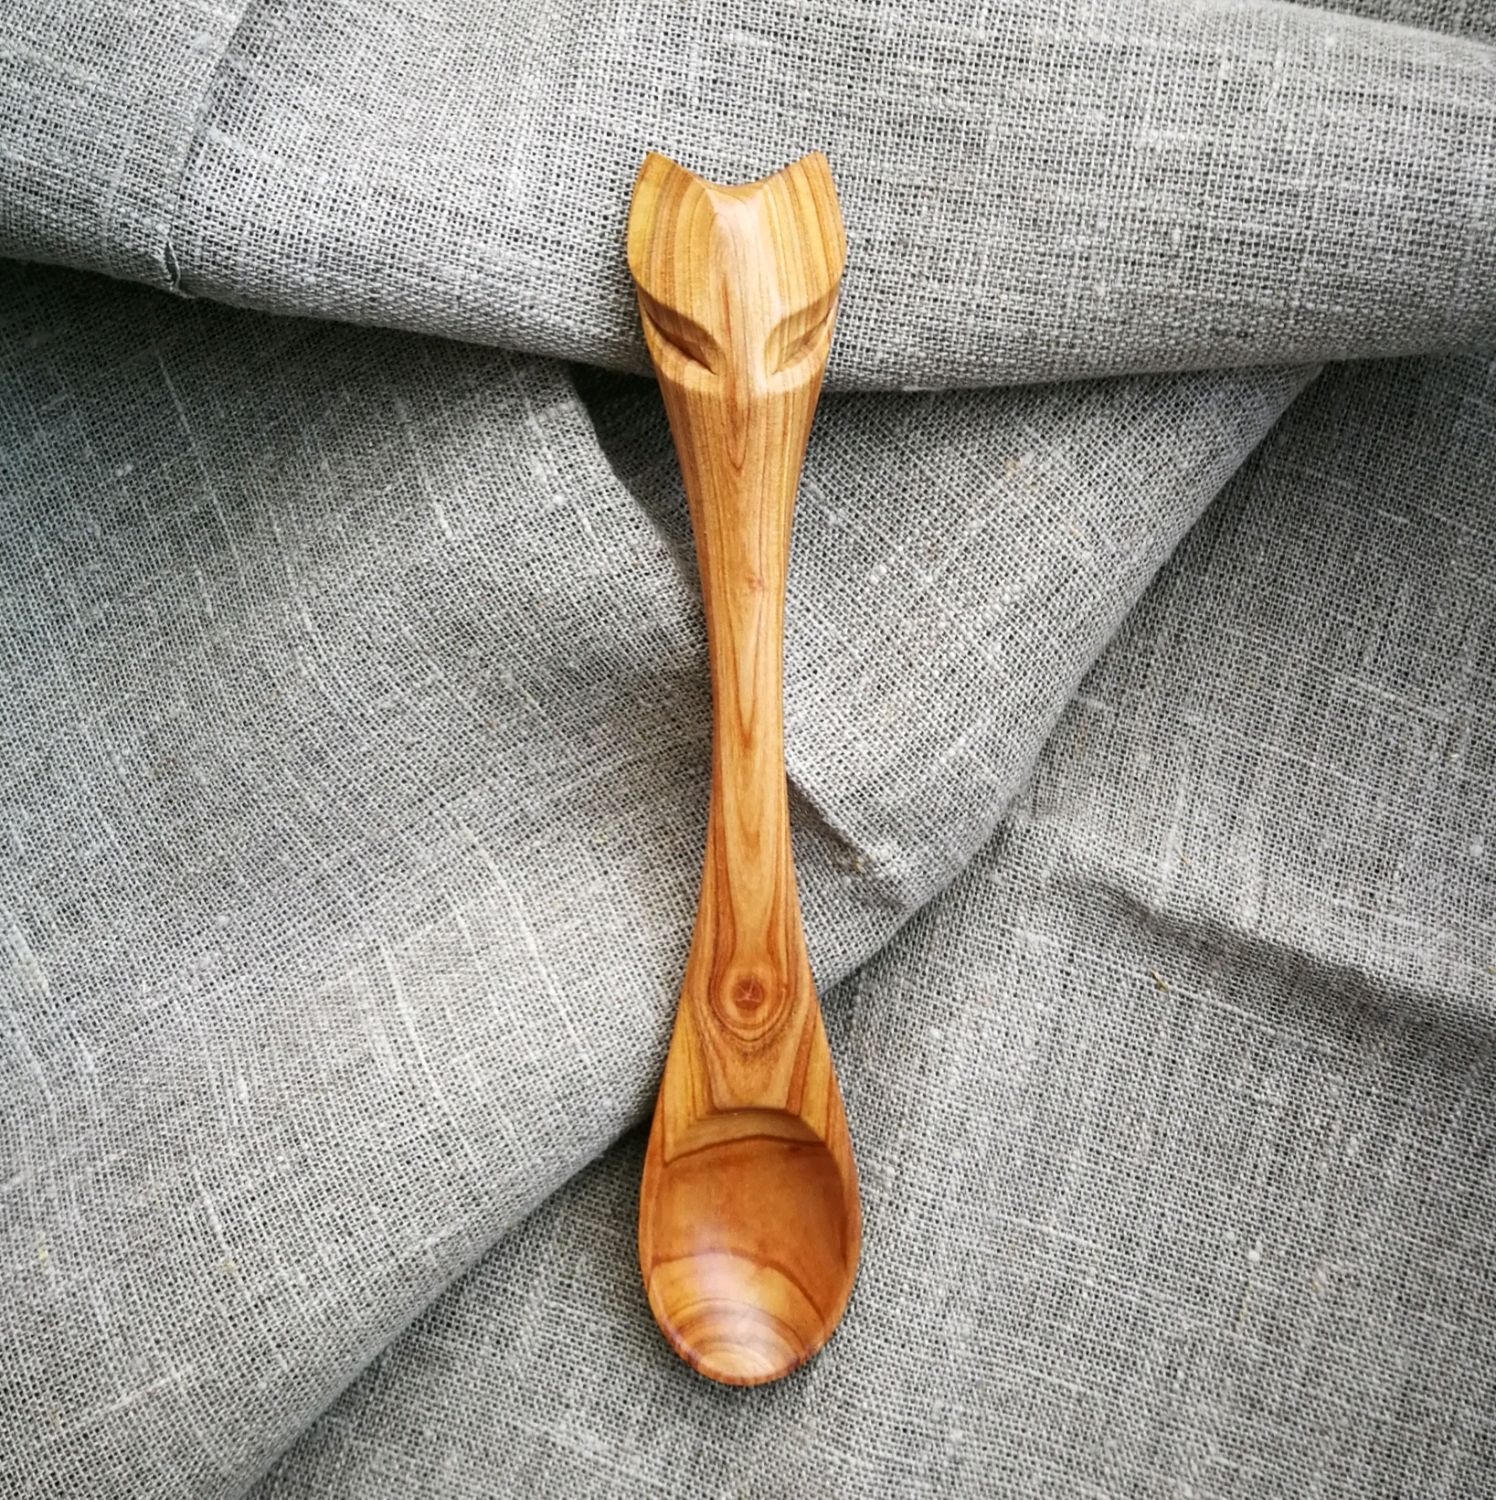 Spoon ' Cat ', Spoons, Ivanovo,  Фото №1